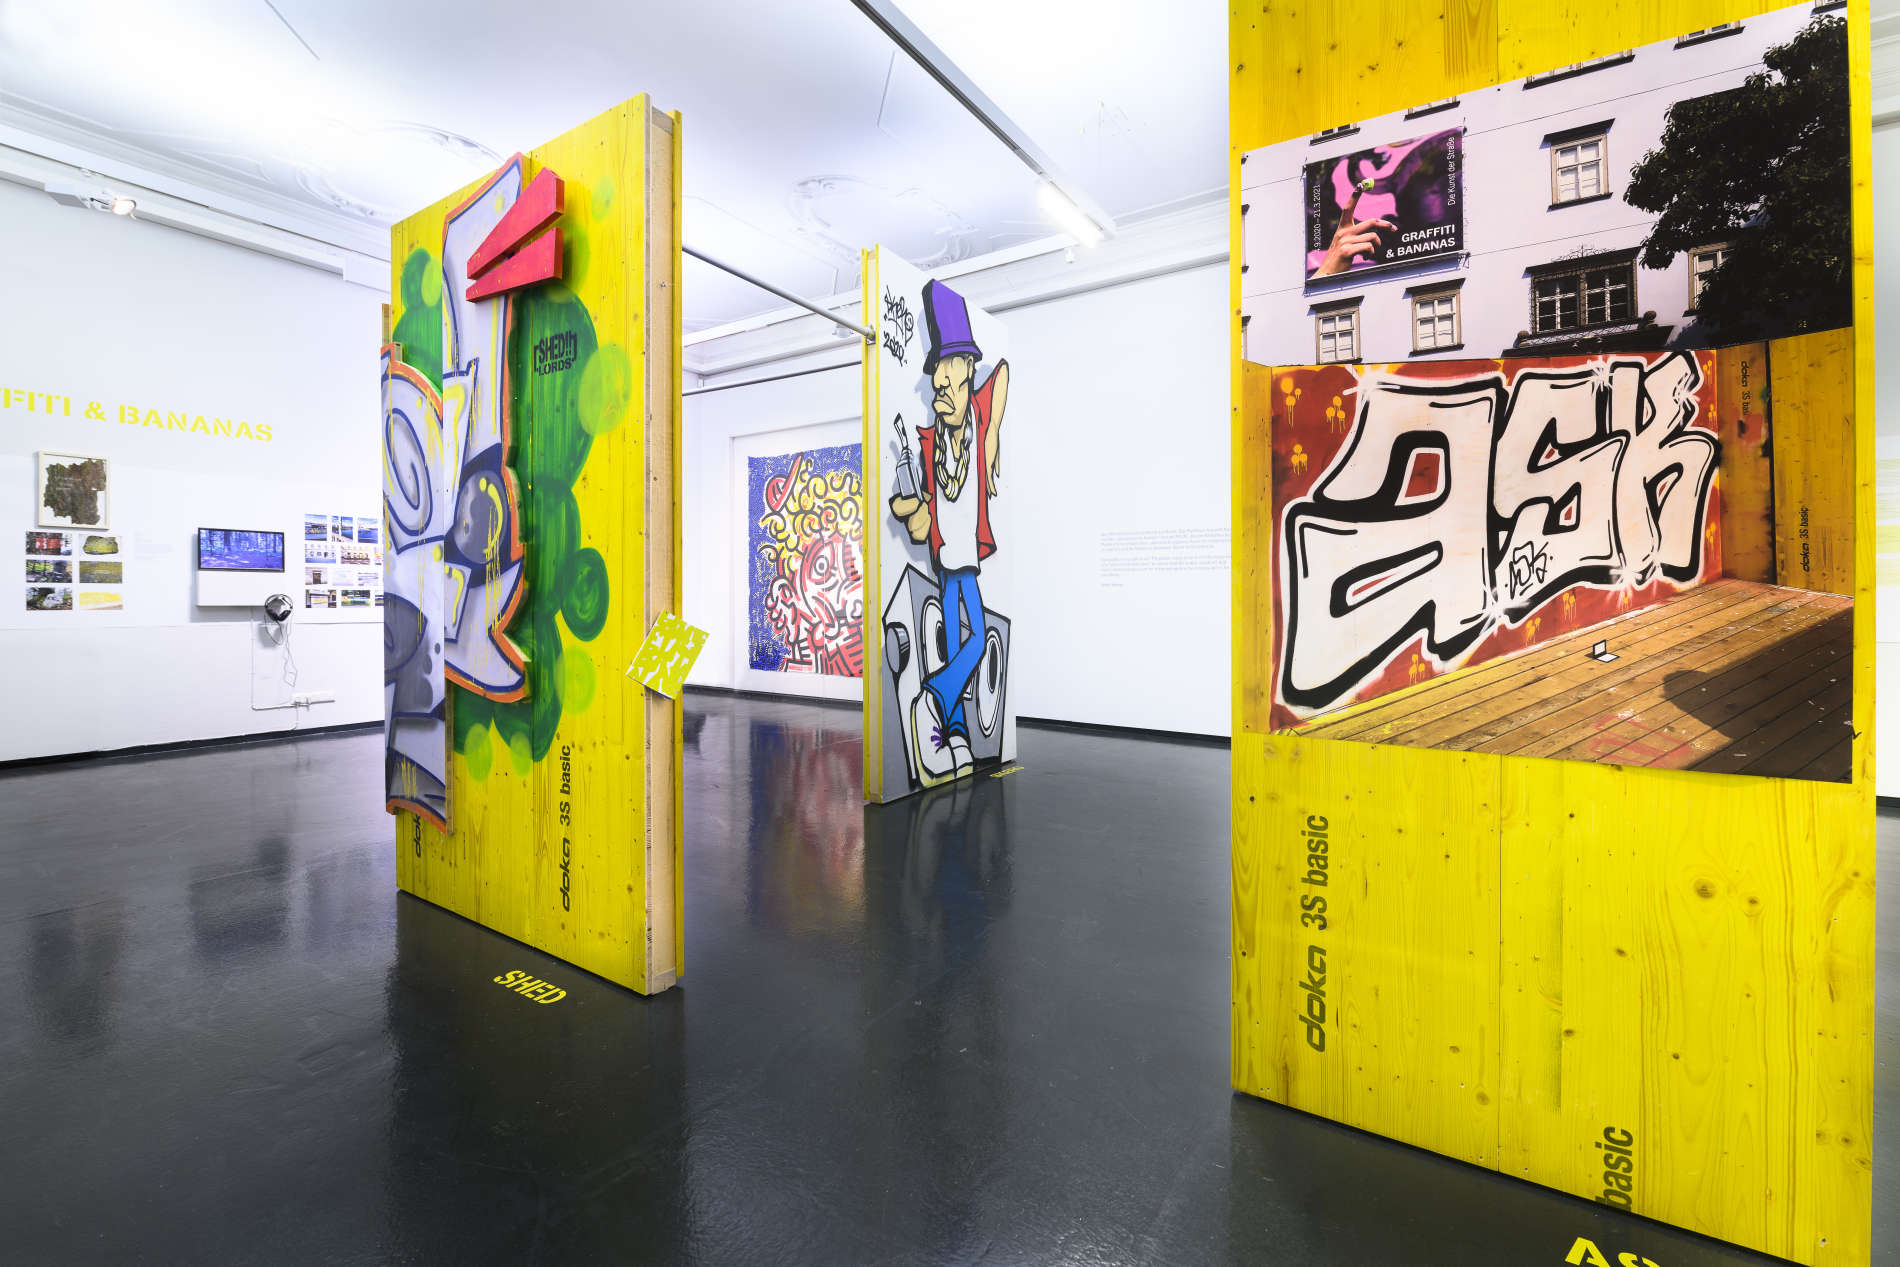 Schön bunt: die Ausstellung „Graffiti & Bananas. Die Kunst der Straße“ im Nordico